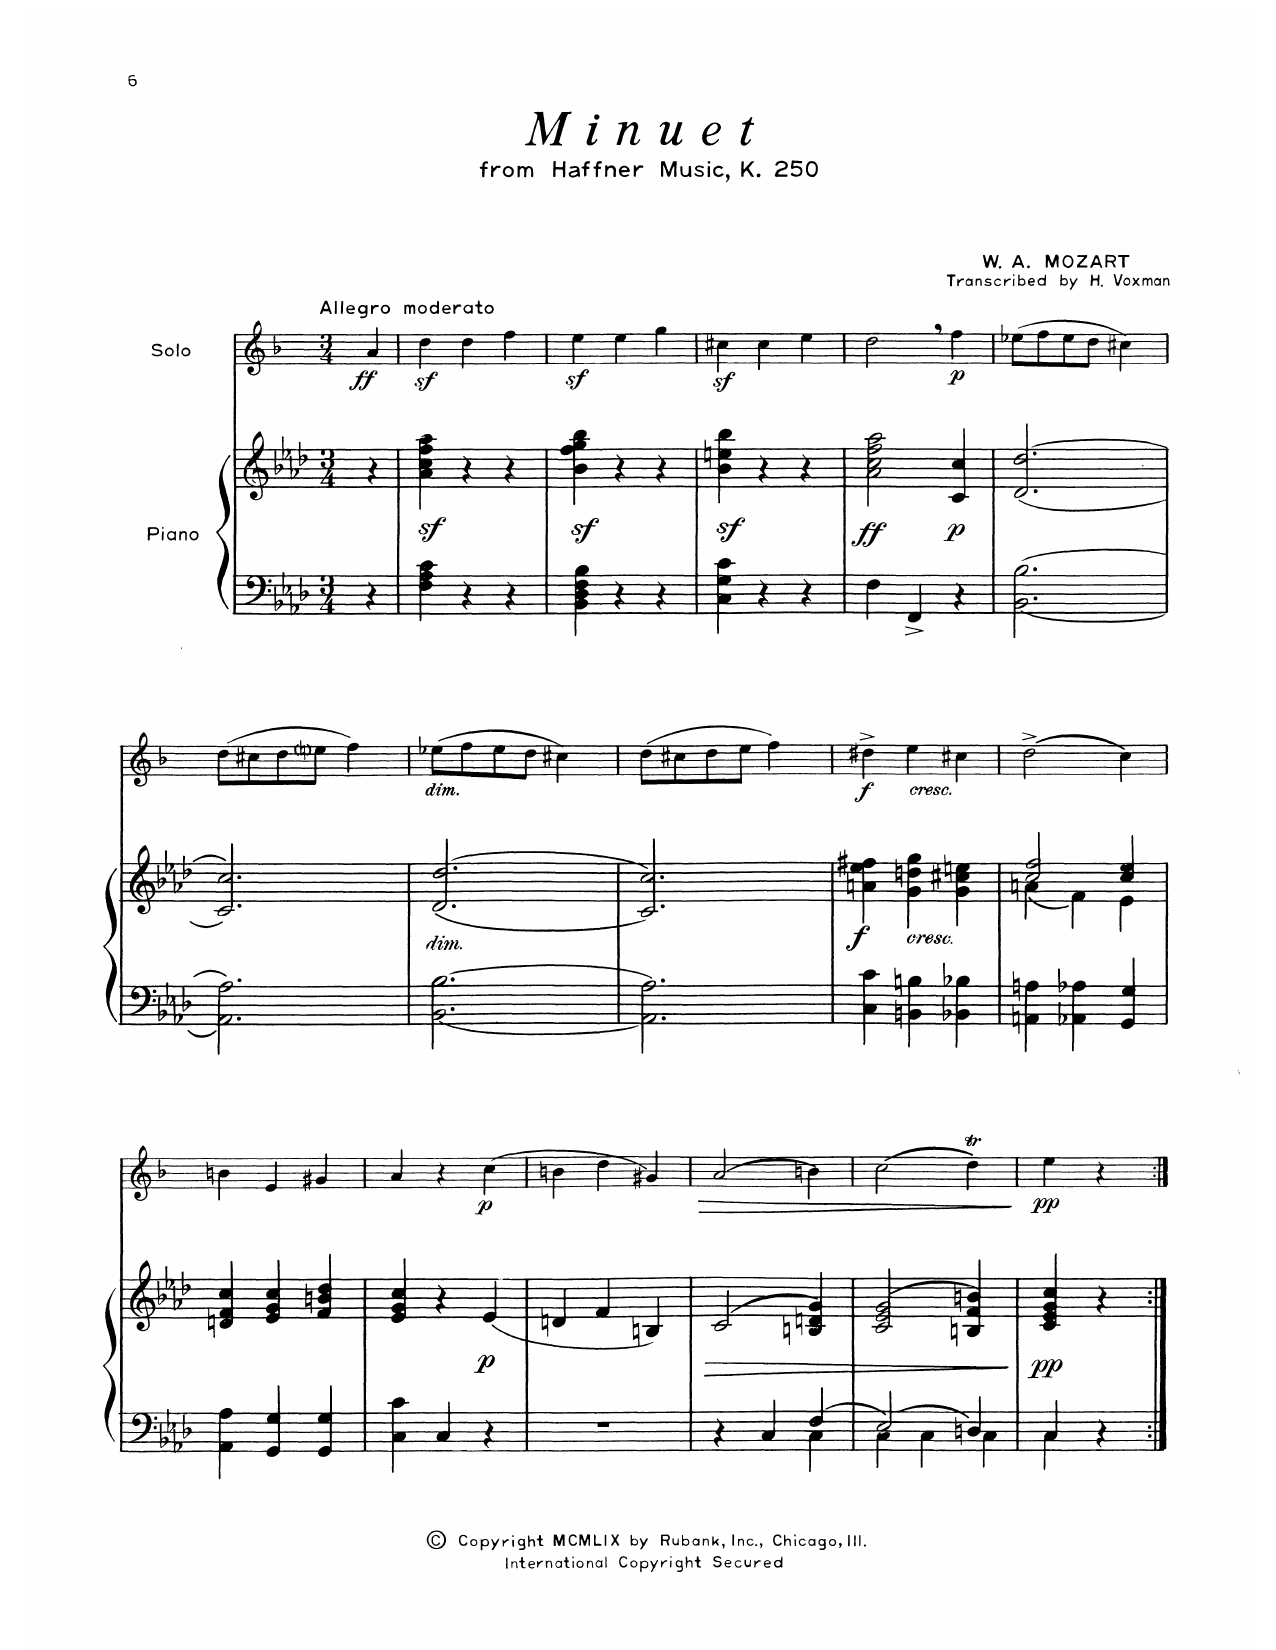 Download Wolfgang Amadeus Mozart Minuet (from Haffner Music) Sheet Music